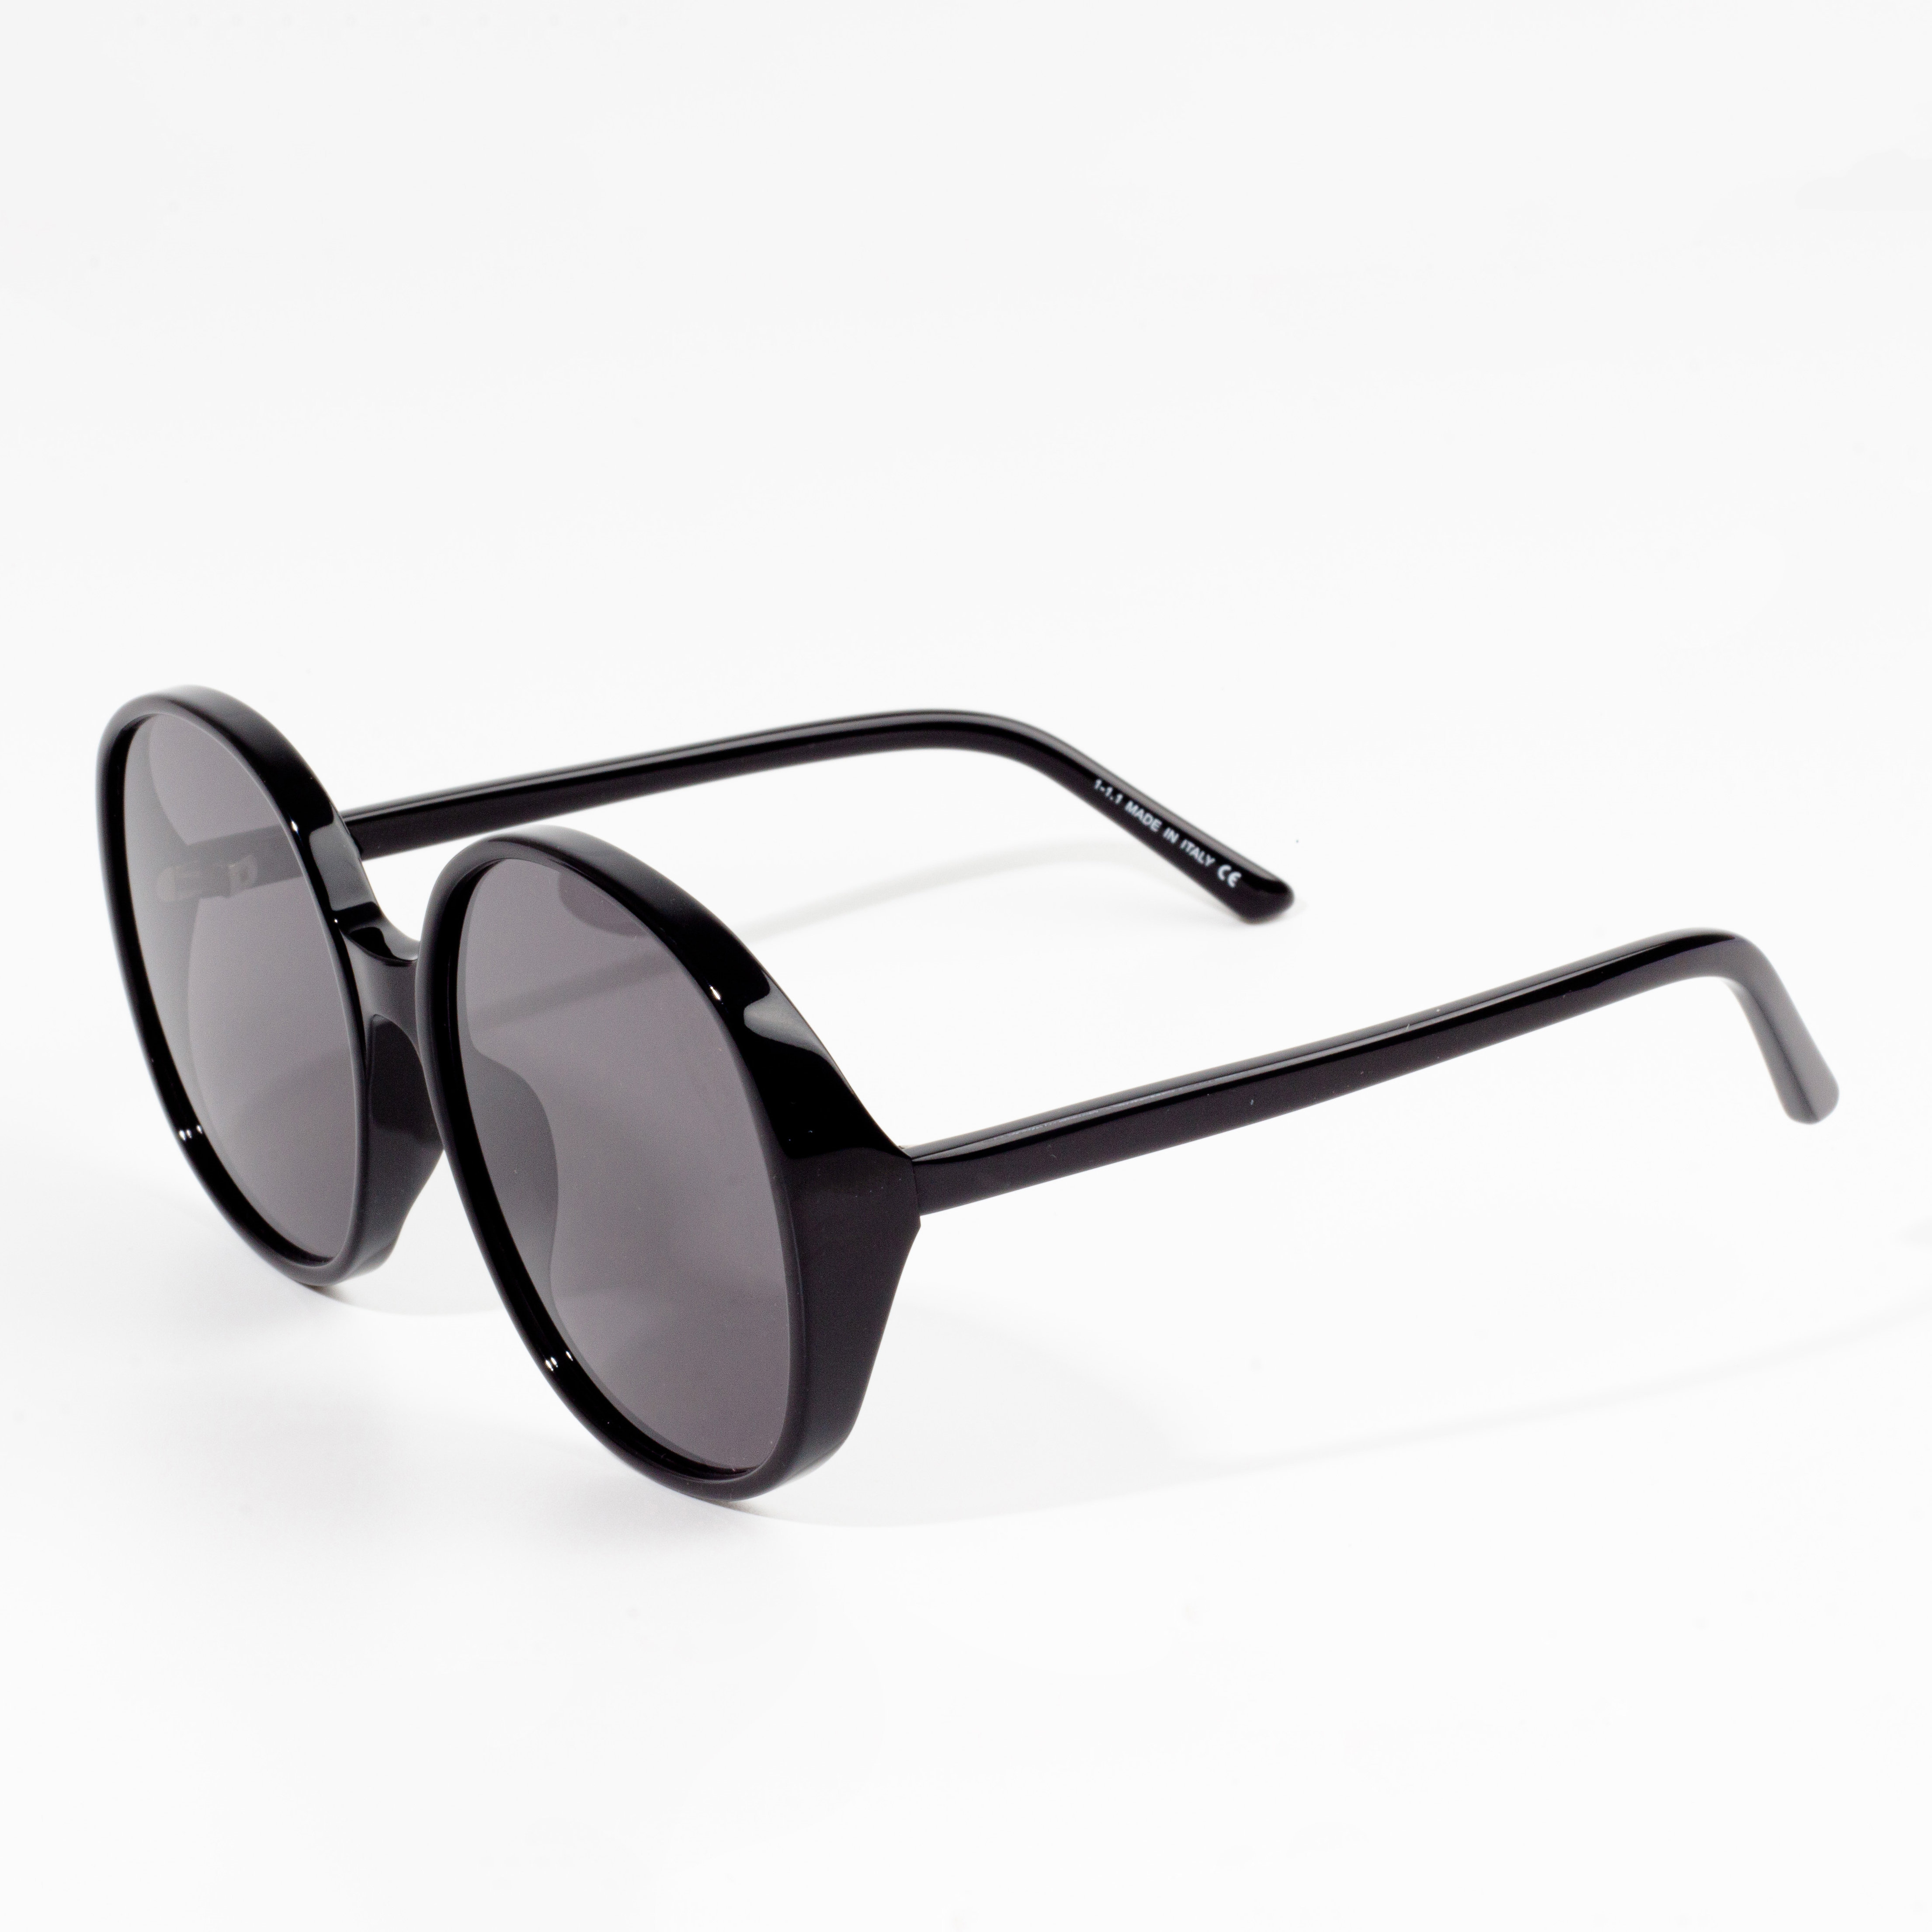 Wholesale Dealers of Kids Sport Sunglasses - Sun Glasses Cheap Eyewears – HJ EYEWEAR